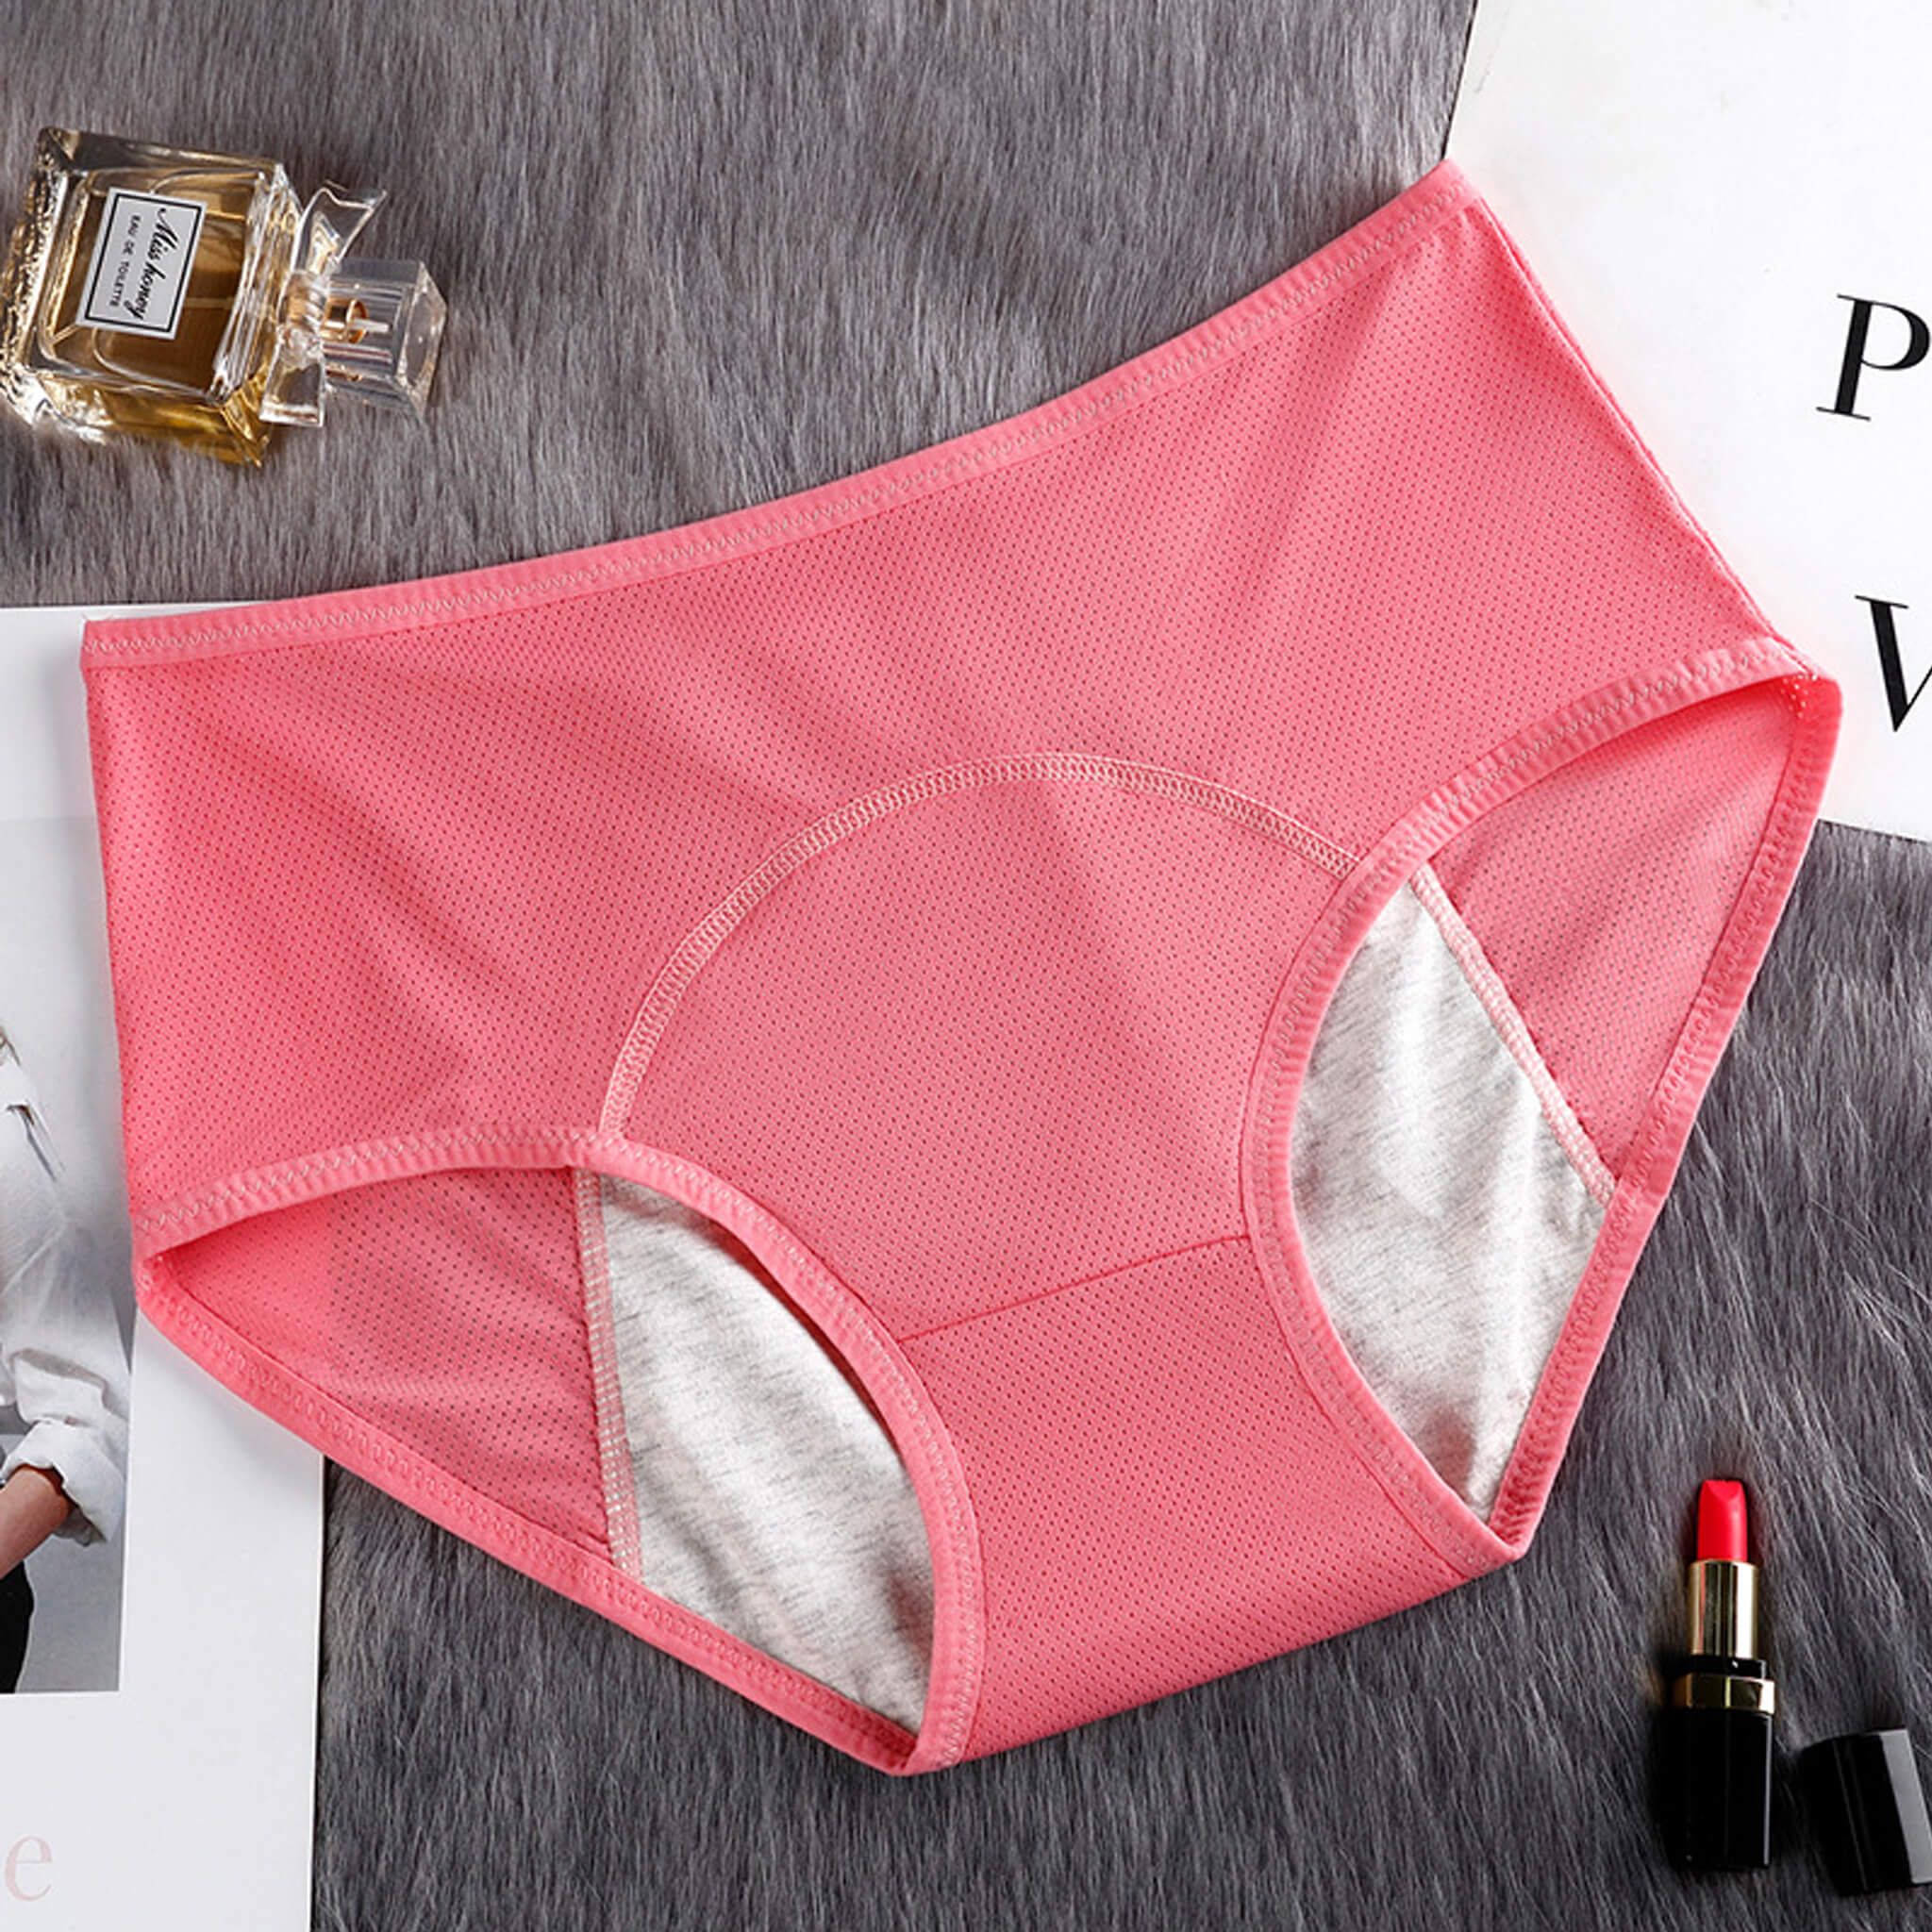 3 Pieces Period Panties Reusable Menstrual Underwear Leak Proof